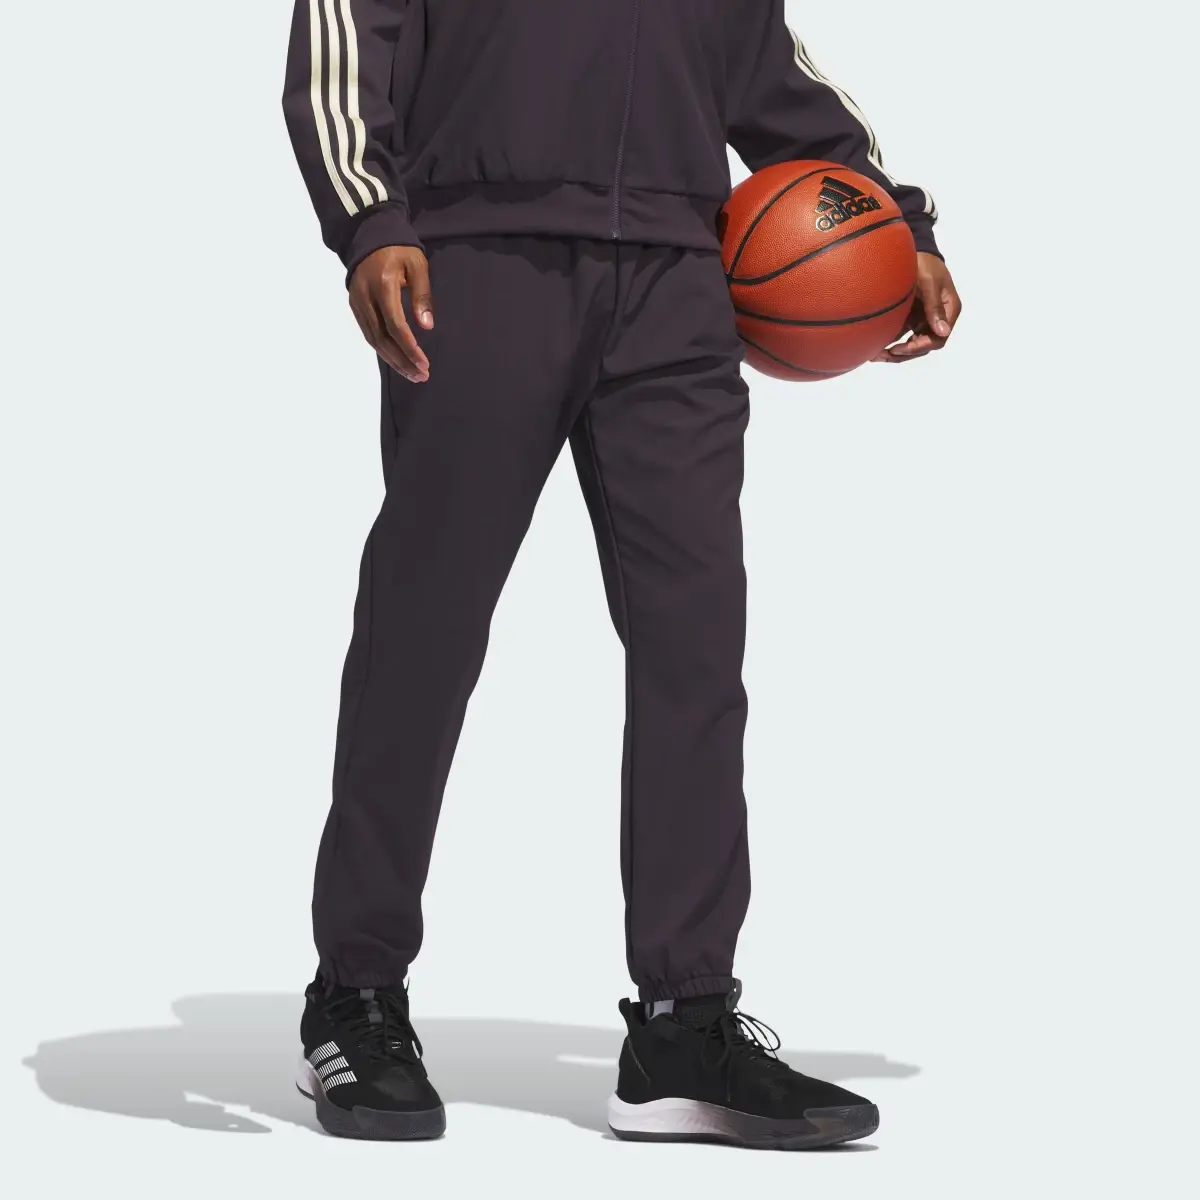 Adidas Basketball Select Pants. 3